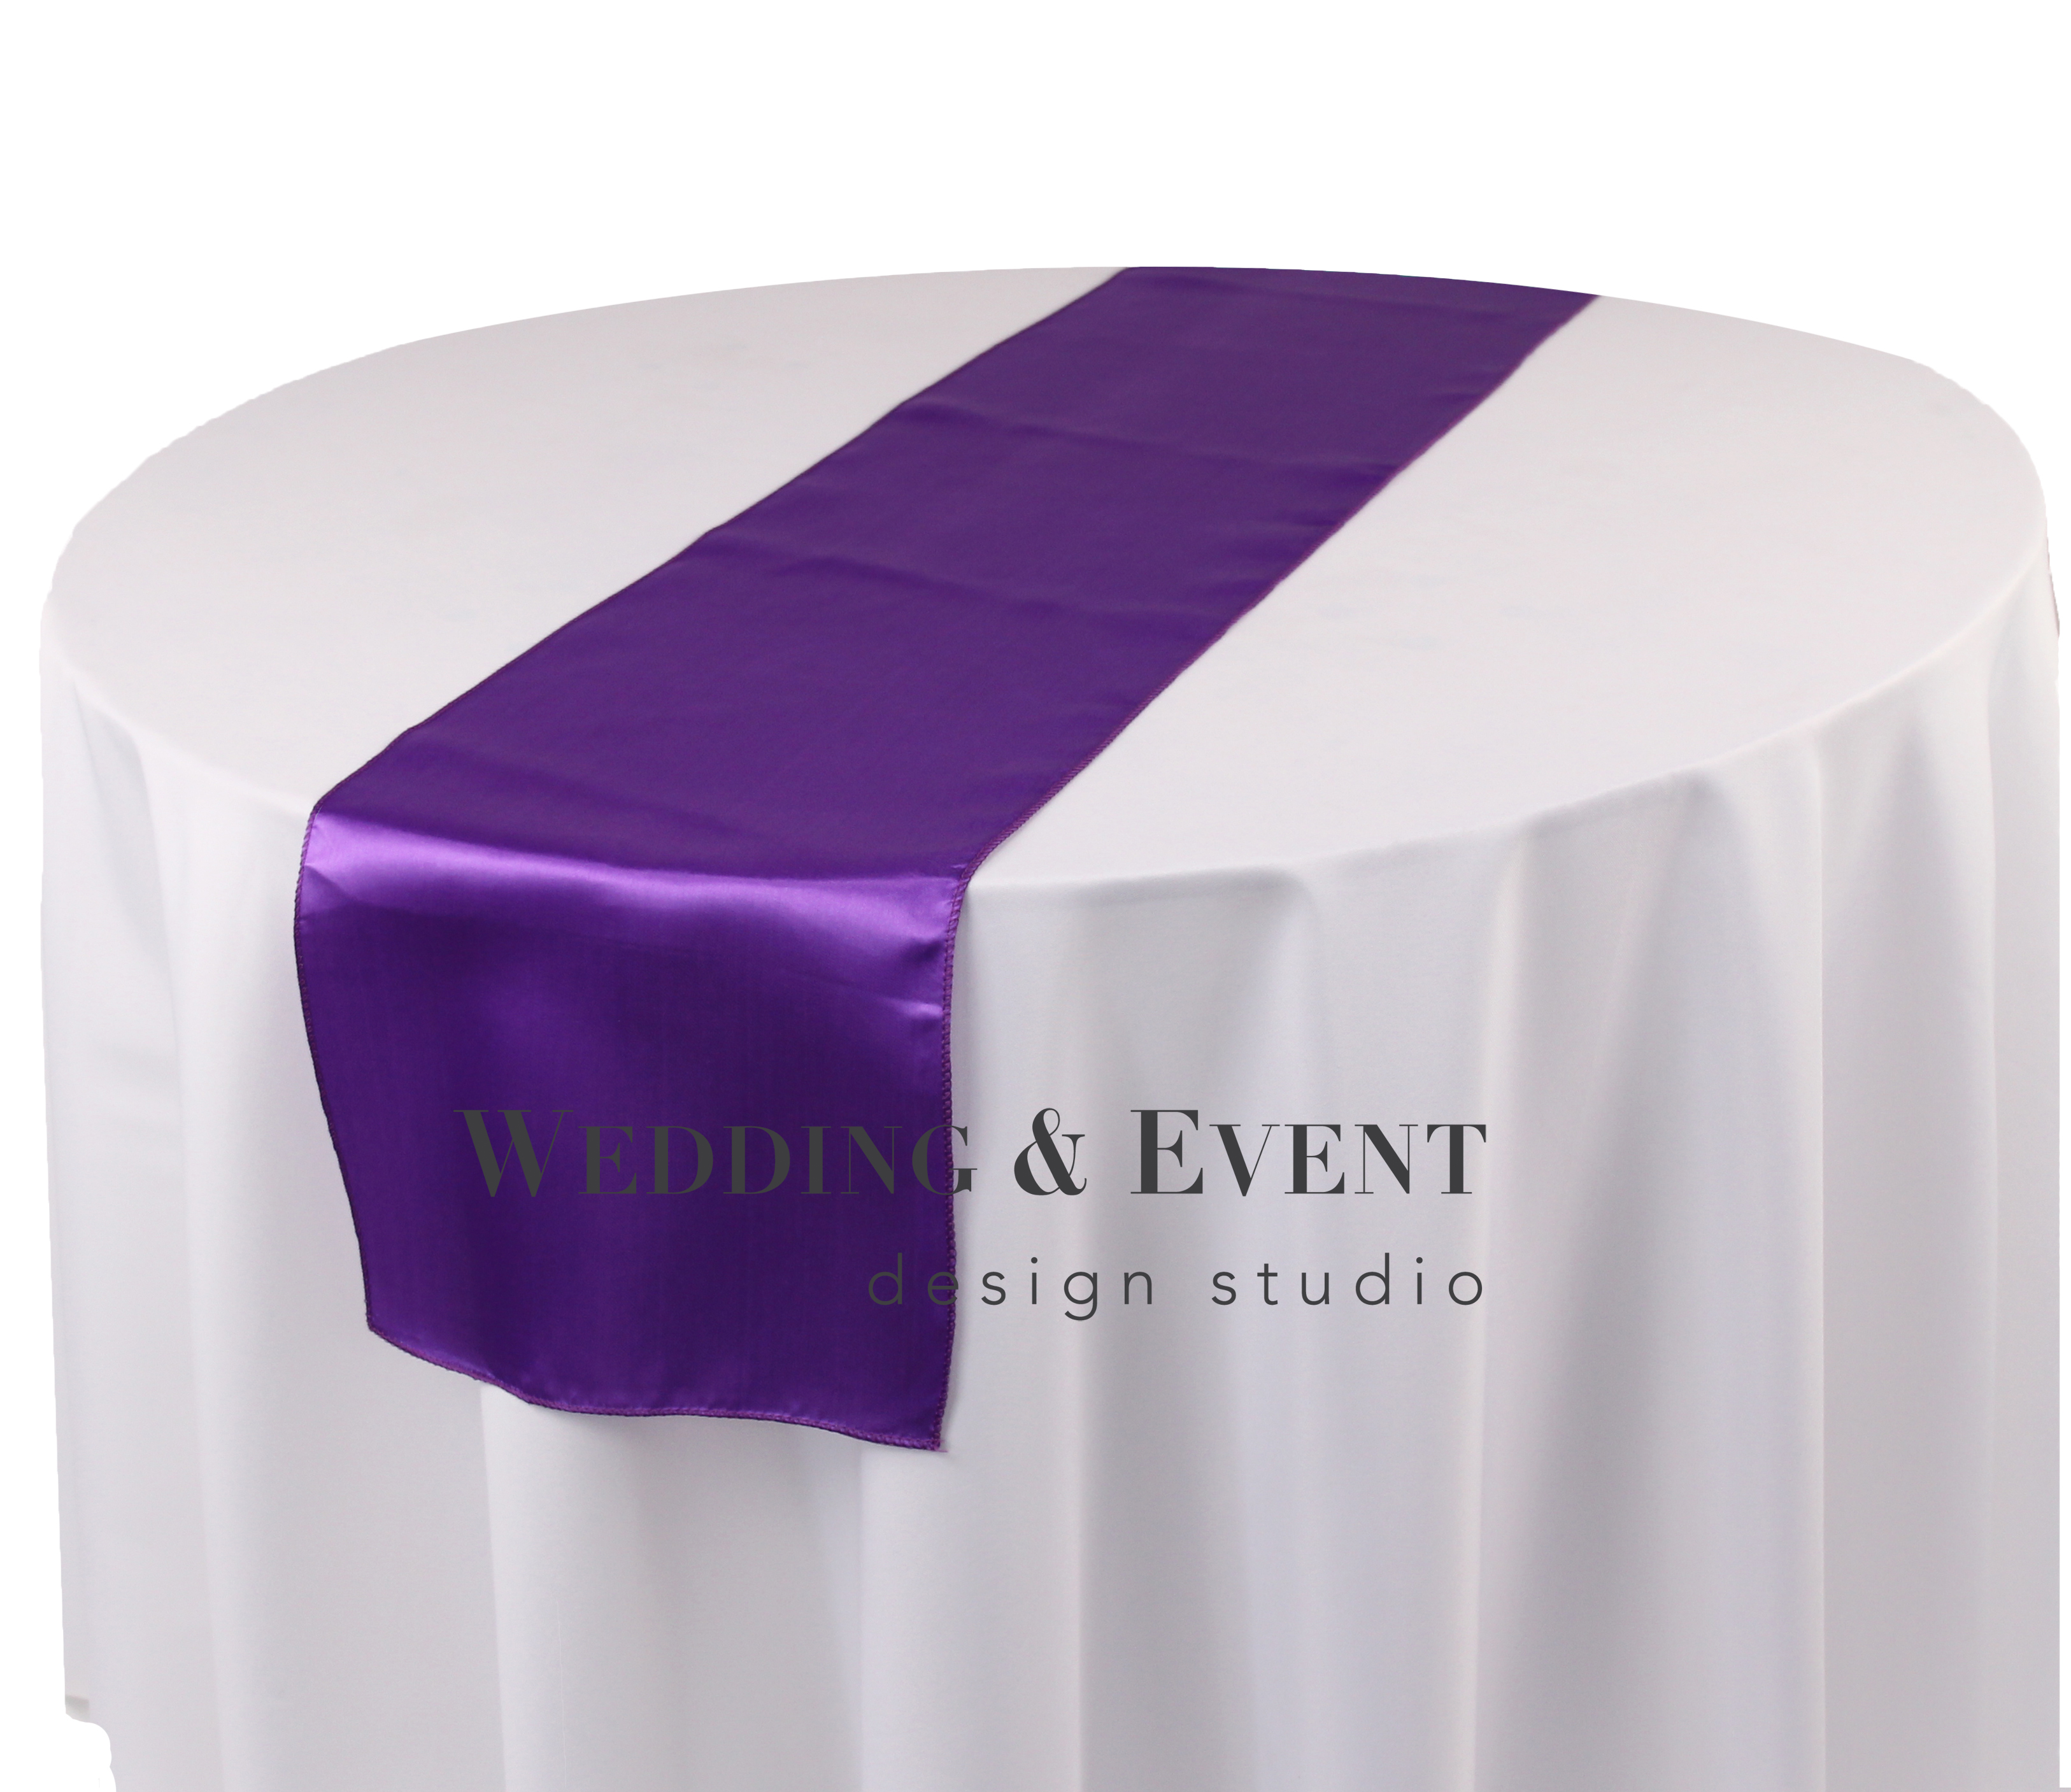 Von internationalen Prominenten bevorzugt Tischläufer, lila Das Studio & | Online-Mietportal Design weds4rent | von Event Wedding - Tischläufer